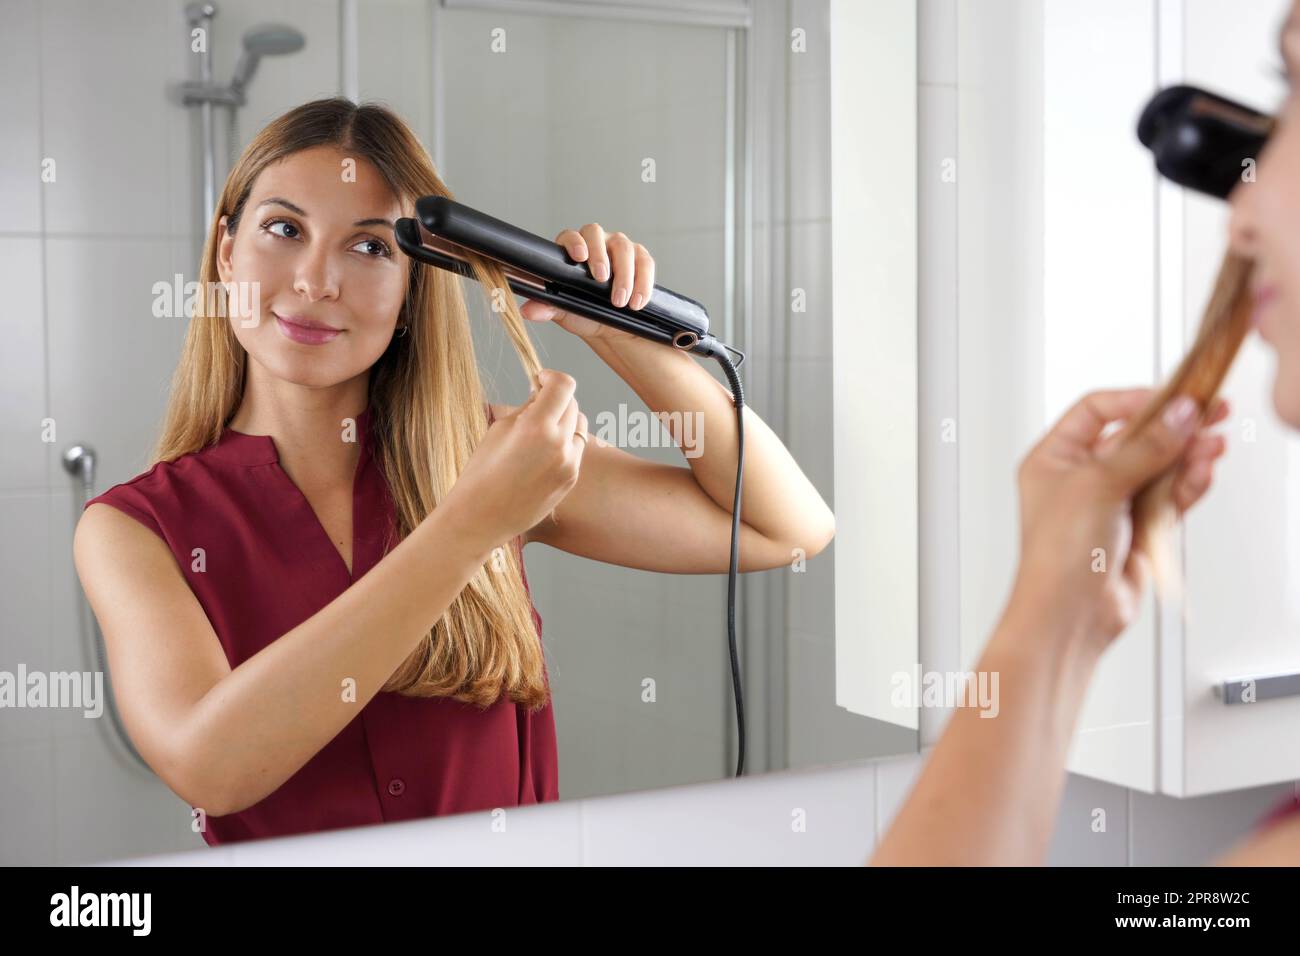 Fille utilisant un lisseur vapeur pour coiffer les cheveux au miroir de la salle de bains Banque D'Images